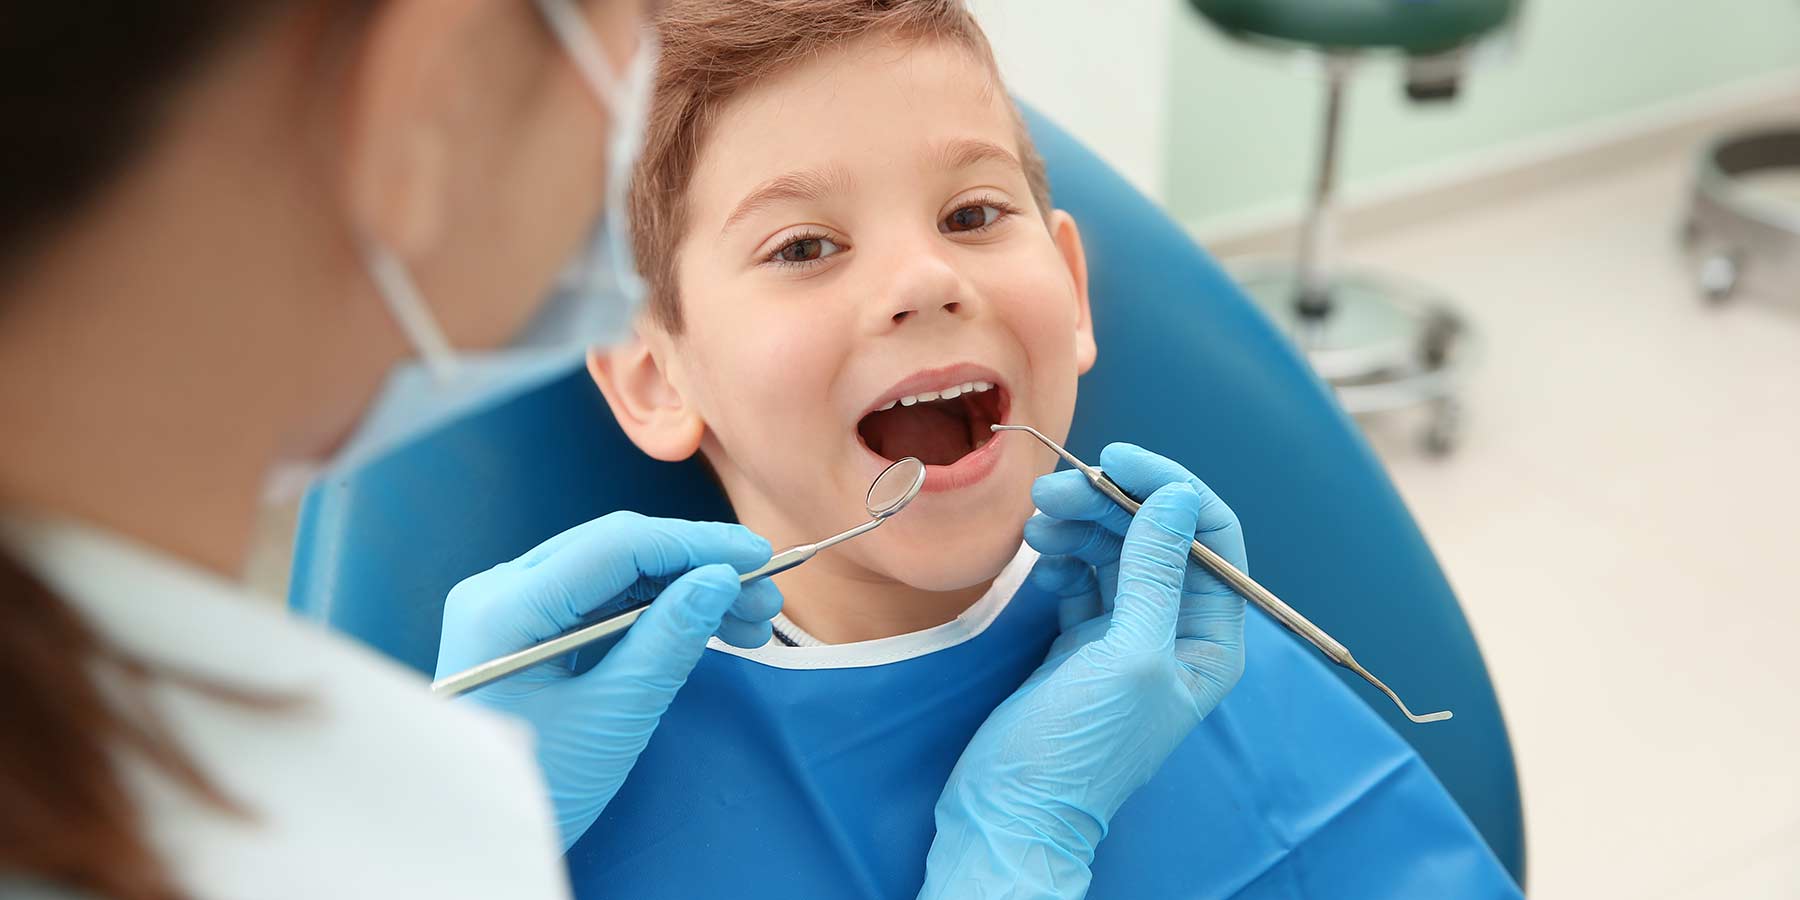 Child Dental Visit